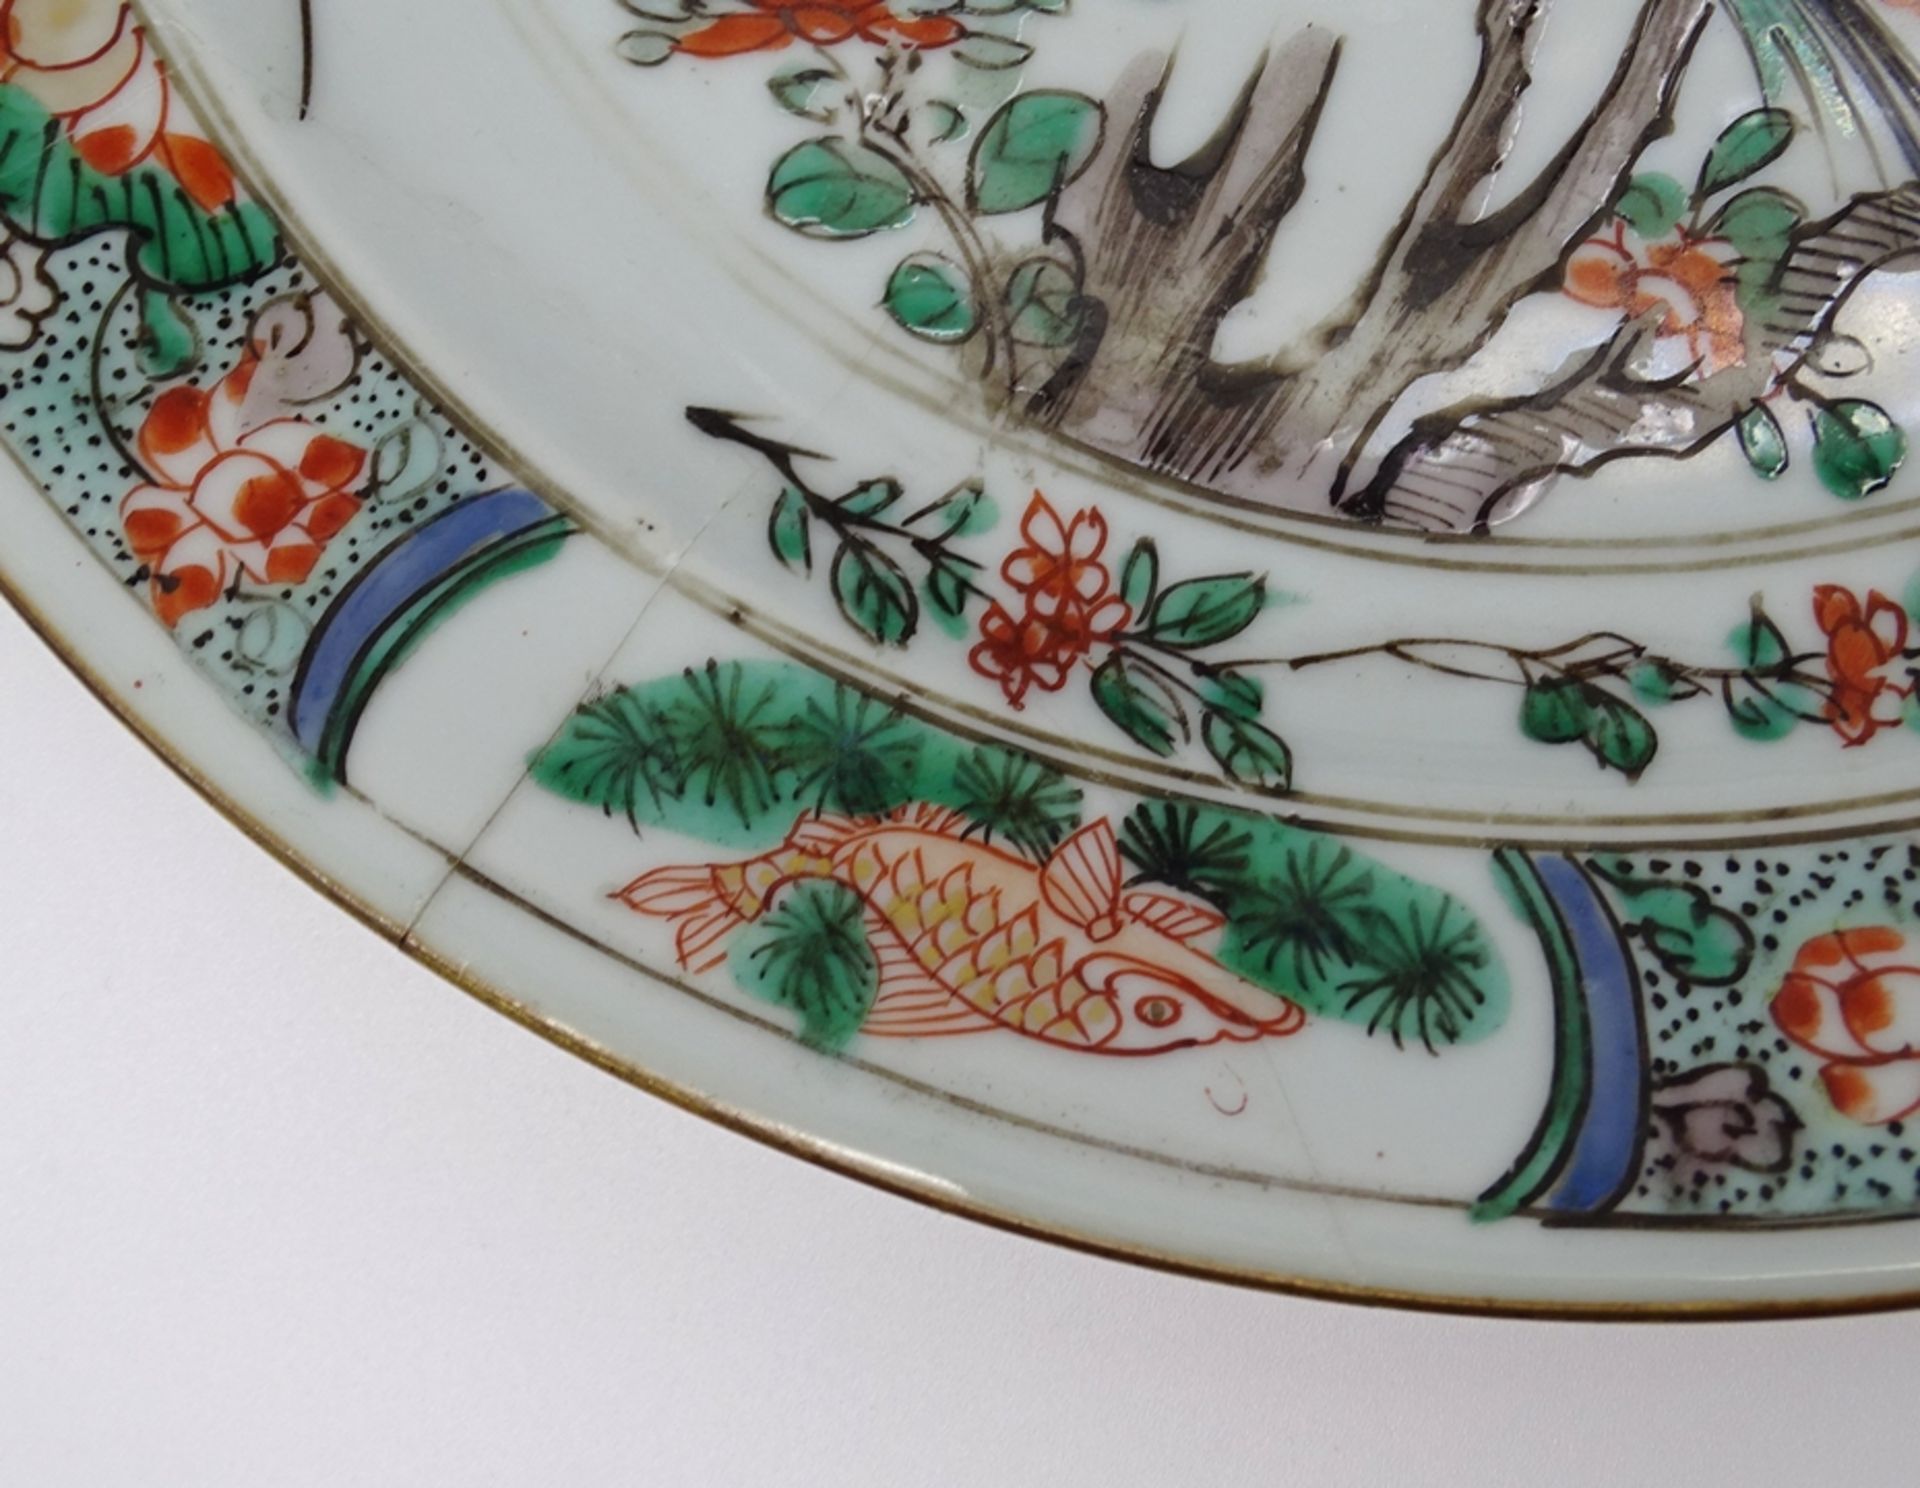 Großer Teller mit Vogel und Blumenmotiven,China, älter, D. 24cm, geklebte Stellen - Bild 10 aus 11